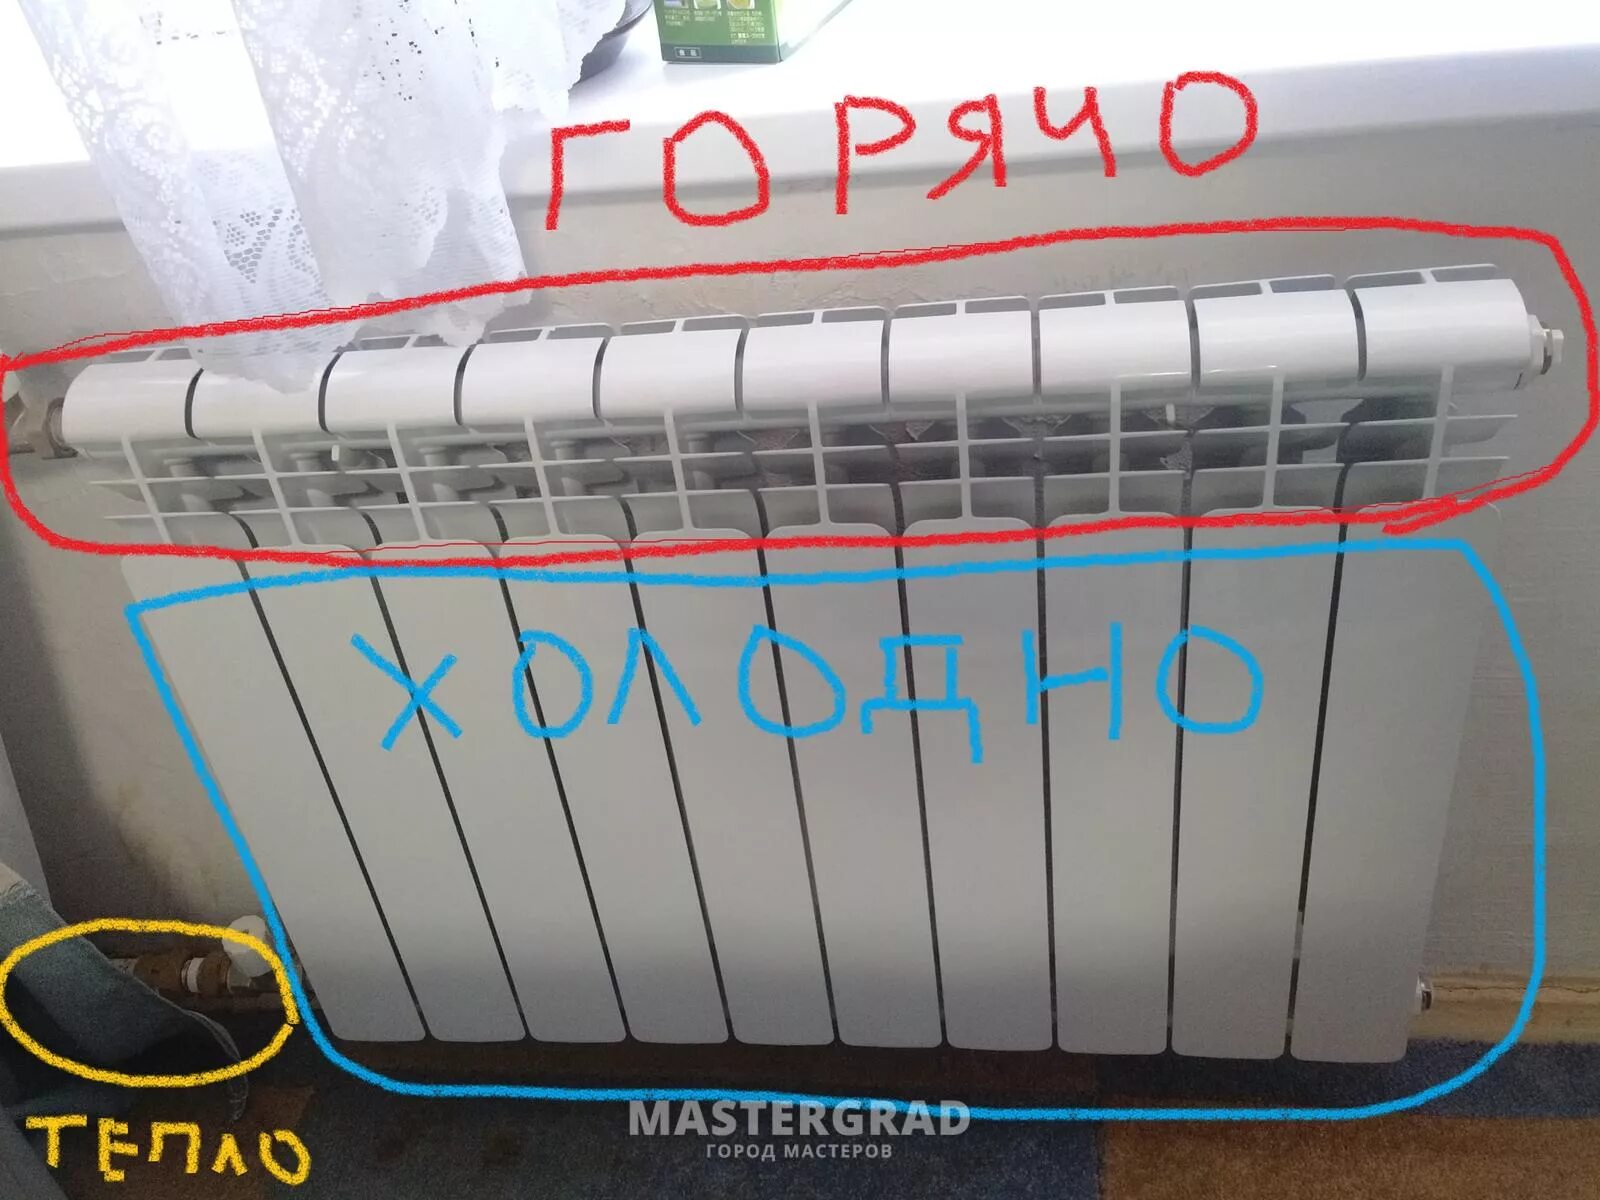 Отопление почему греется. Батарея отопления радиаторы плохо греет. Не греет радиатор отопления. Почему батареи отопления плохо греют. Плохо греются батареи в квартире.